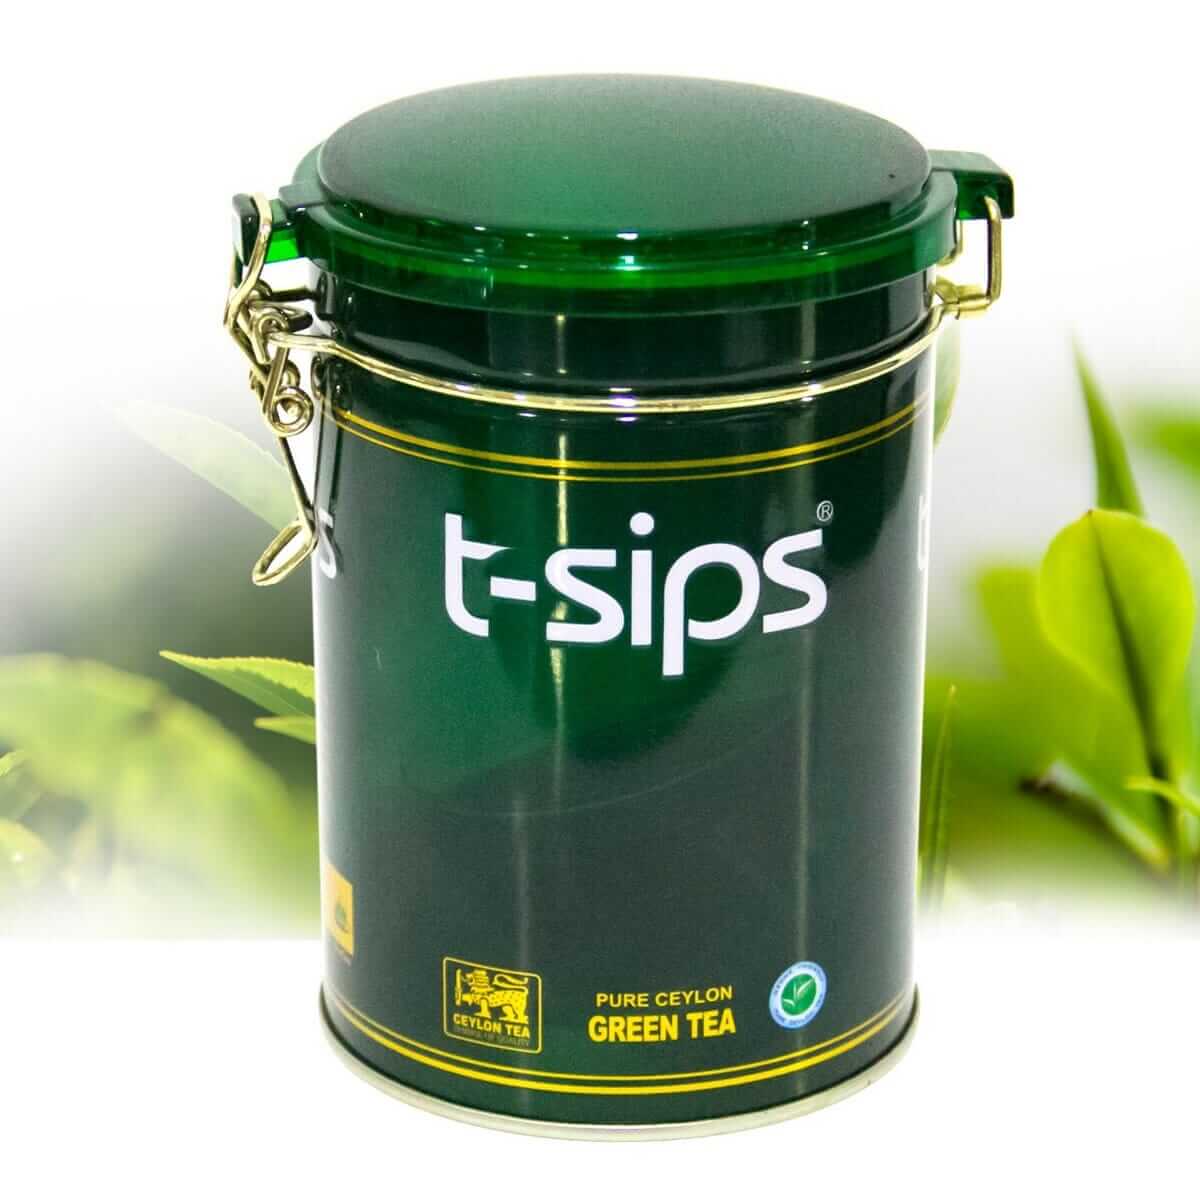 t-sips Ceylon Green tea